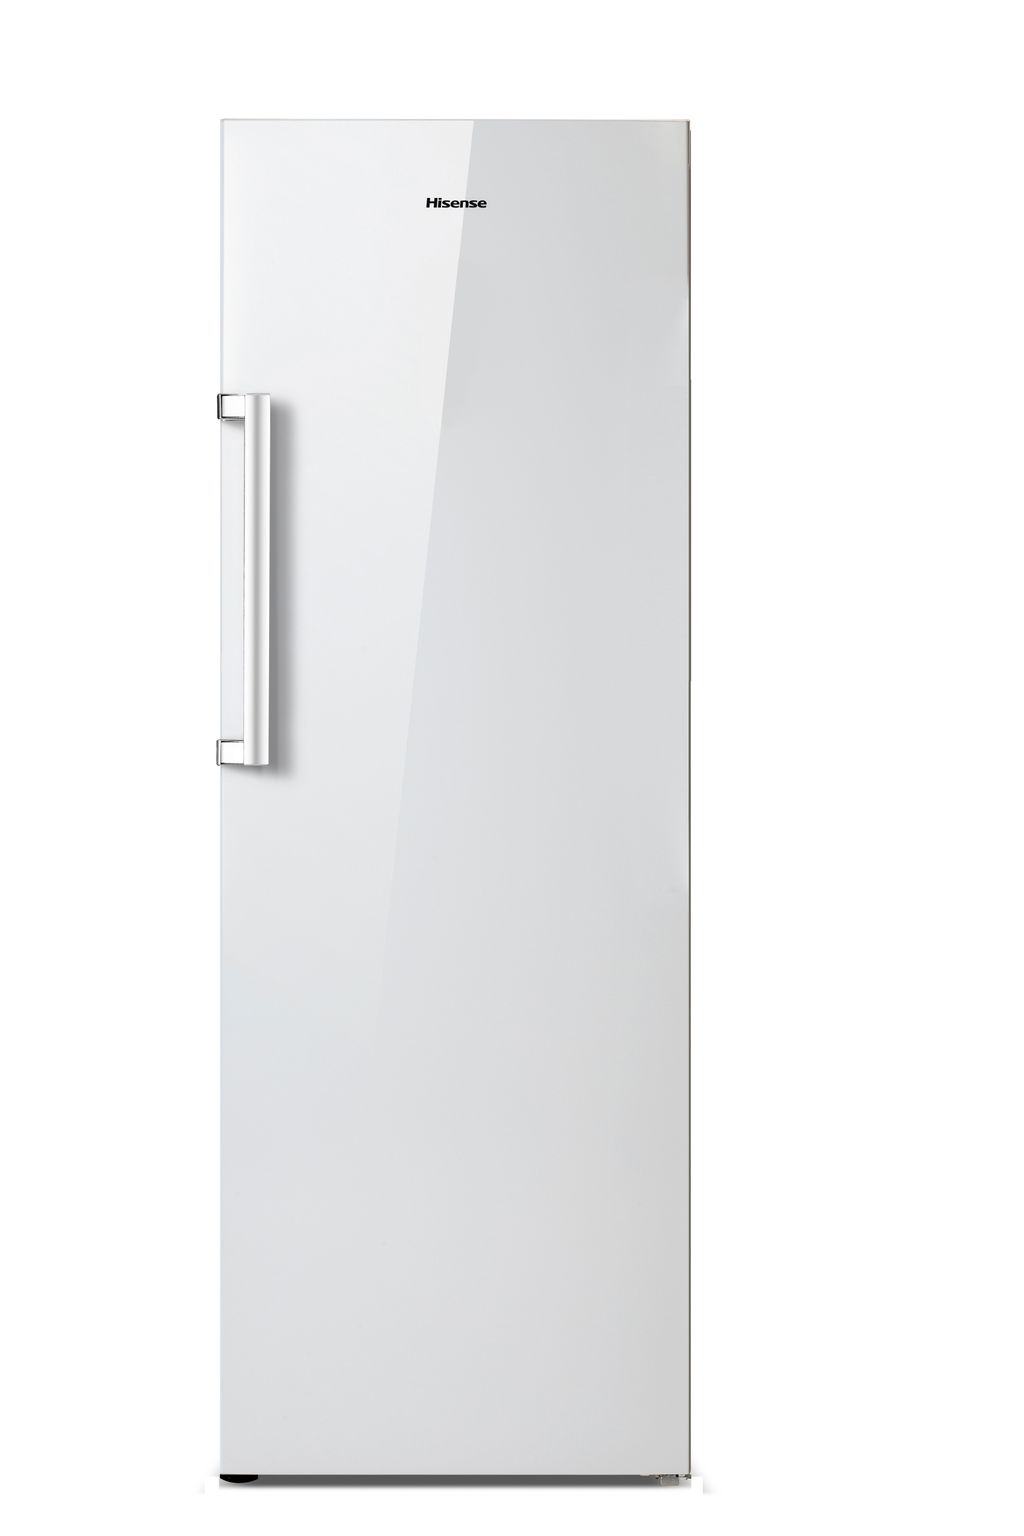 Hisense kastmodel koelkast